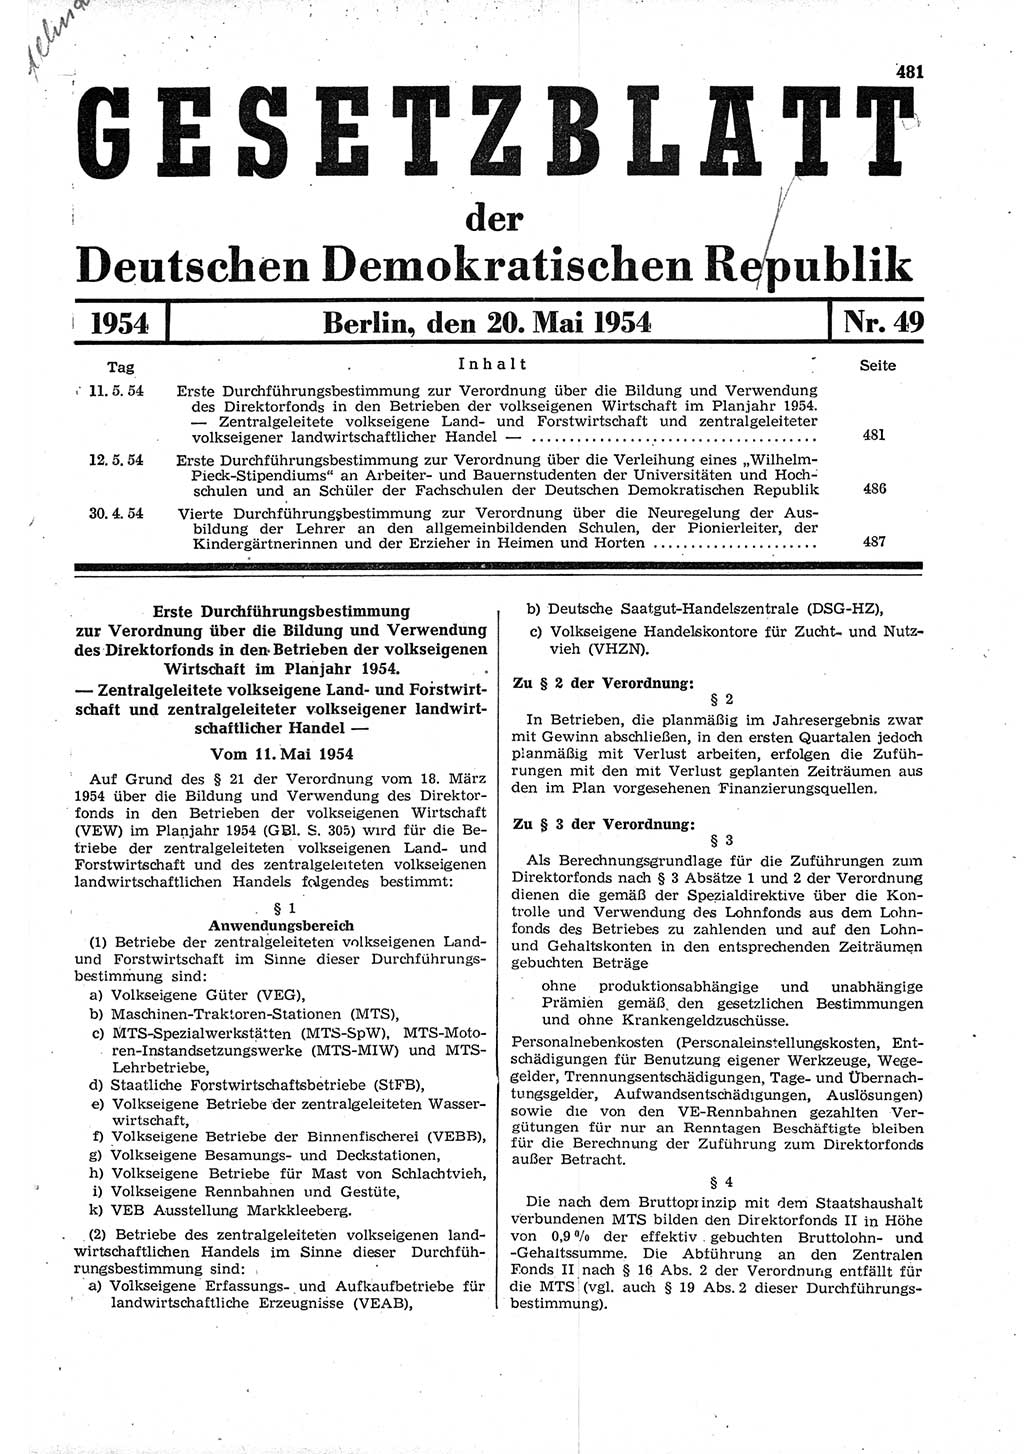 Gesetzblatt (GBl.) der Deutschen Demokratischen Republik (DDR) 1954, Seite 481 (GBl. DDR 1954, S. 481)